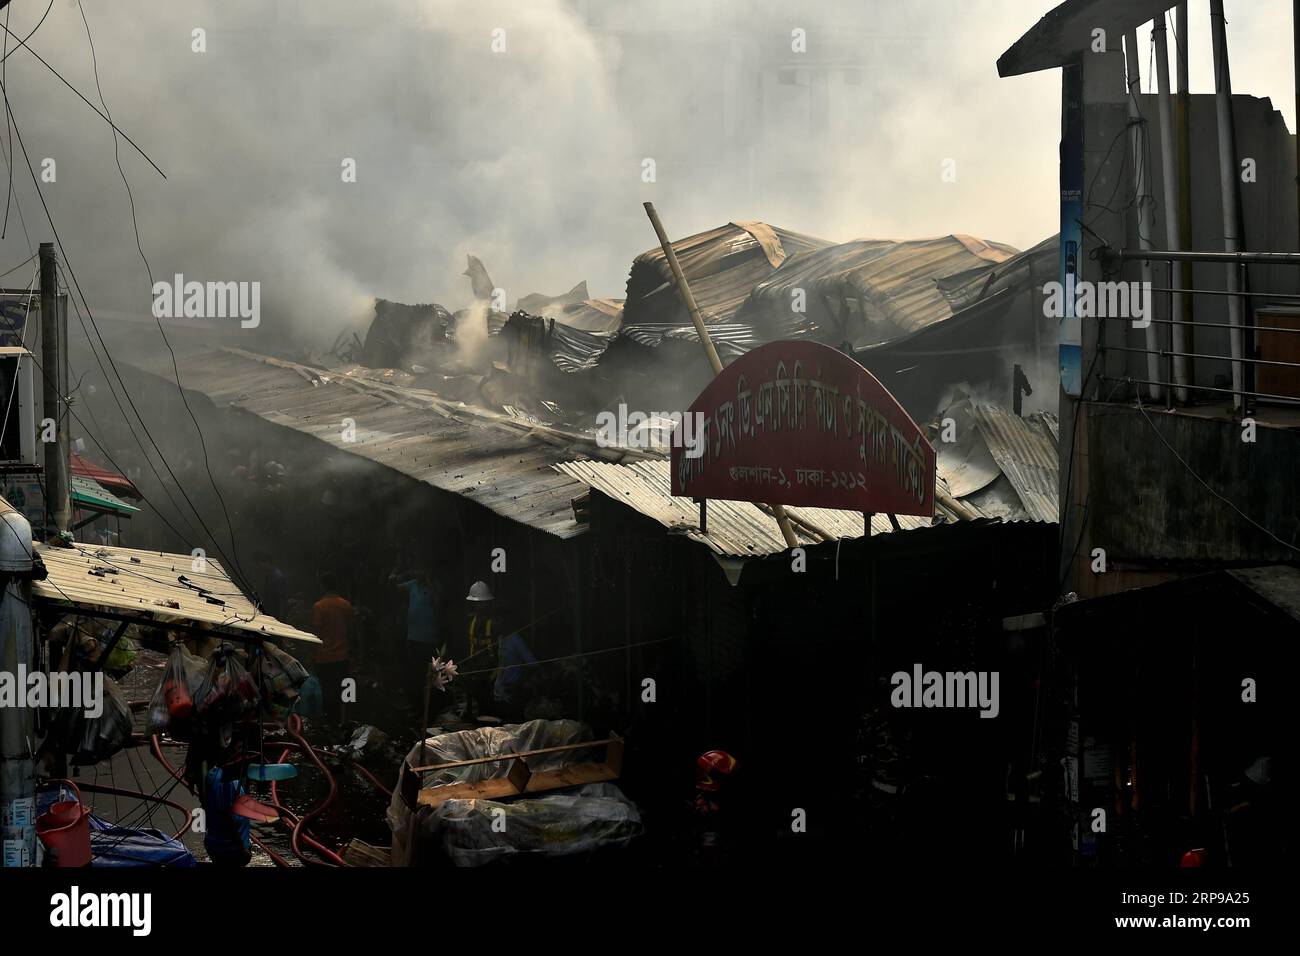 (190330) -- DHAKA, 30. März 2019 -- in Dhaka, Bangladesch, 30. März 2019, wird Ein Küchenmarkt in Flammen niedergebrannt. Ein Feuer habe am Samstag Hunderte von Geschäften auf einem Küchenmarkt in Dhaka's Gulshan entkernt und Waren und Eigentum zerstört, sagte ein Feuerwehrmann. Bisher wurden keine Todesfälle gemeldet. Der Markt war zu dem Zeitpunkt, als der Brand ausbrach, nicht für Geschäfte geöffnet. Stringer) BANGLADESCH-DHAKA-MARKET-FIRE Naim-ul-karim PUBLICATIONxNOTxINxCHN Stockfoto